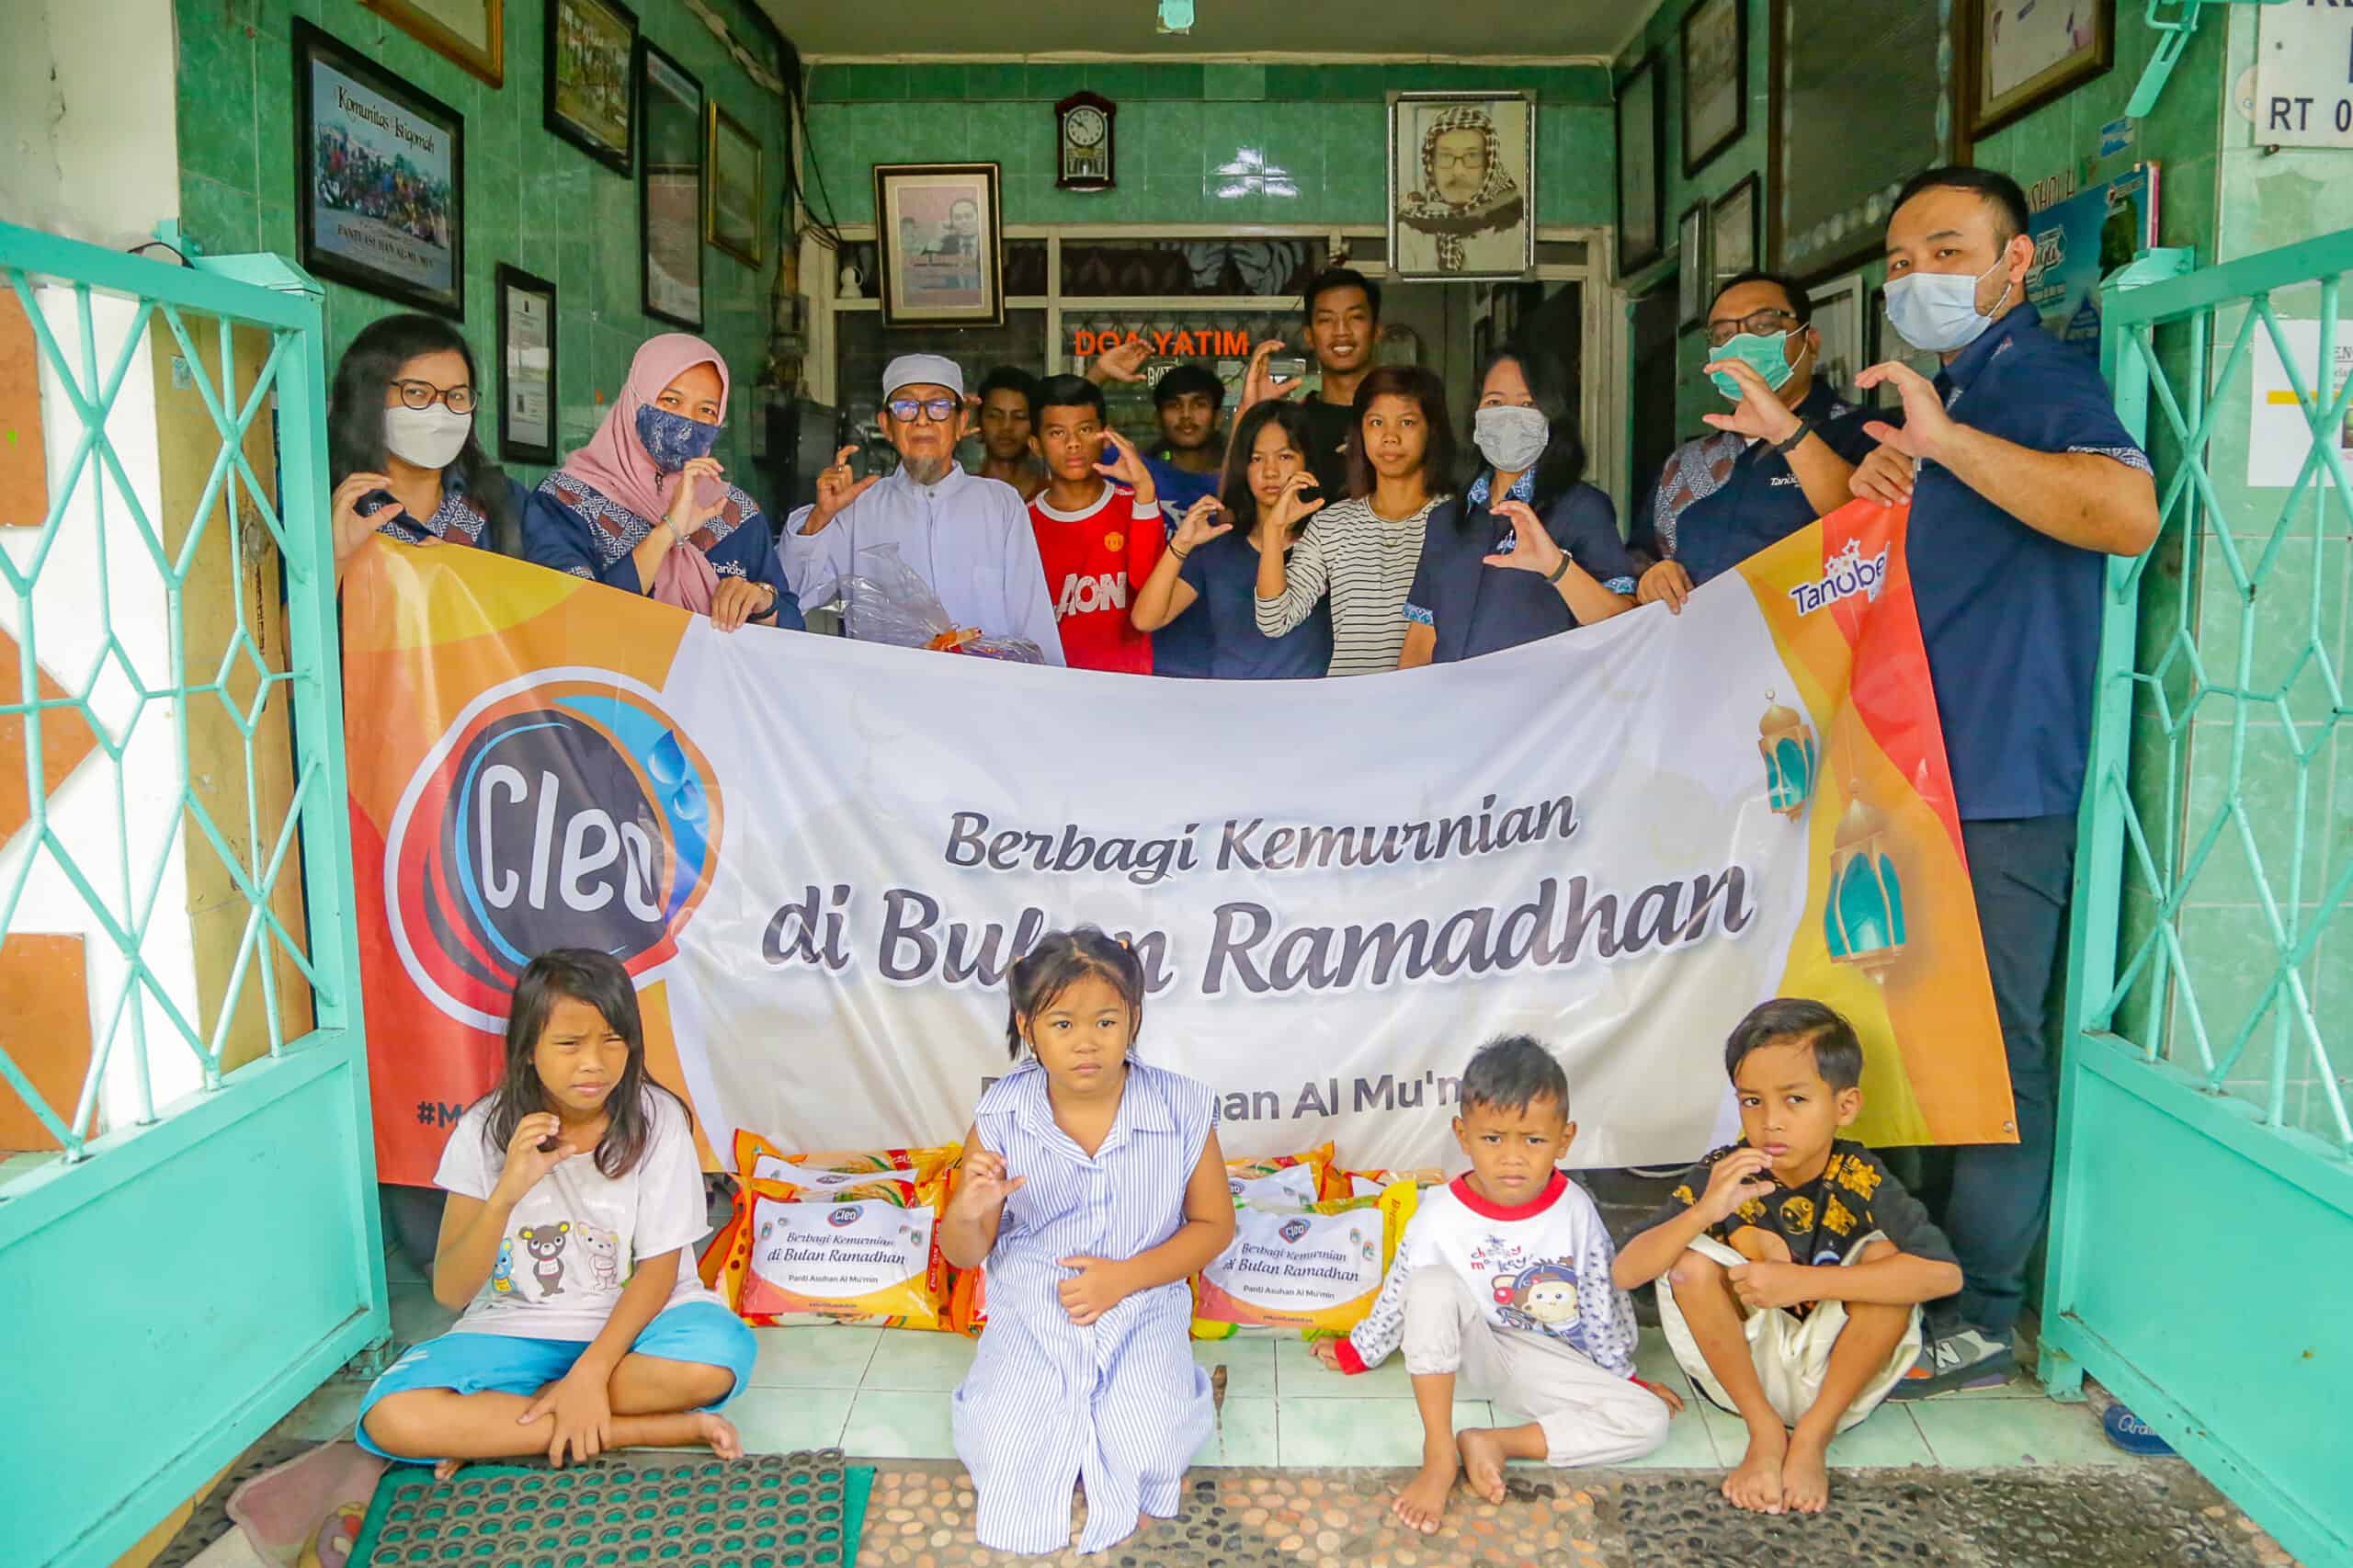 Berbagi Kemurnian Di Bulan Ramadhan Bersama Panti Asuhan Al Mu’min Surabaya